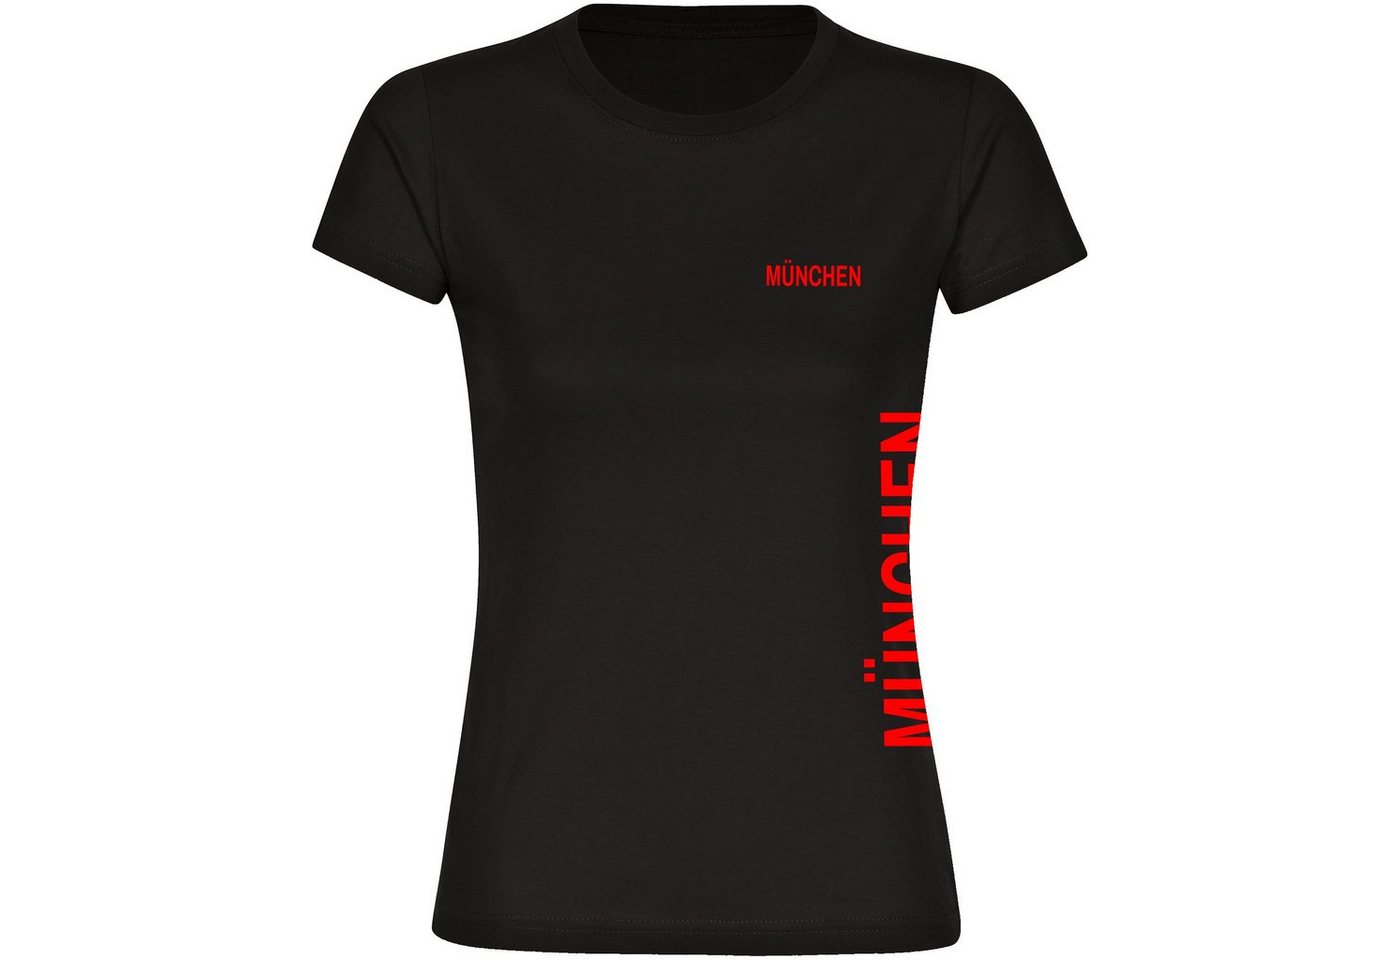 multifanshop T-Shirt Damen München rot - Brust & Seite - Frauen von multifanshop